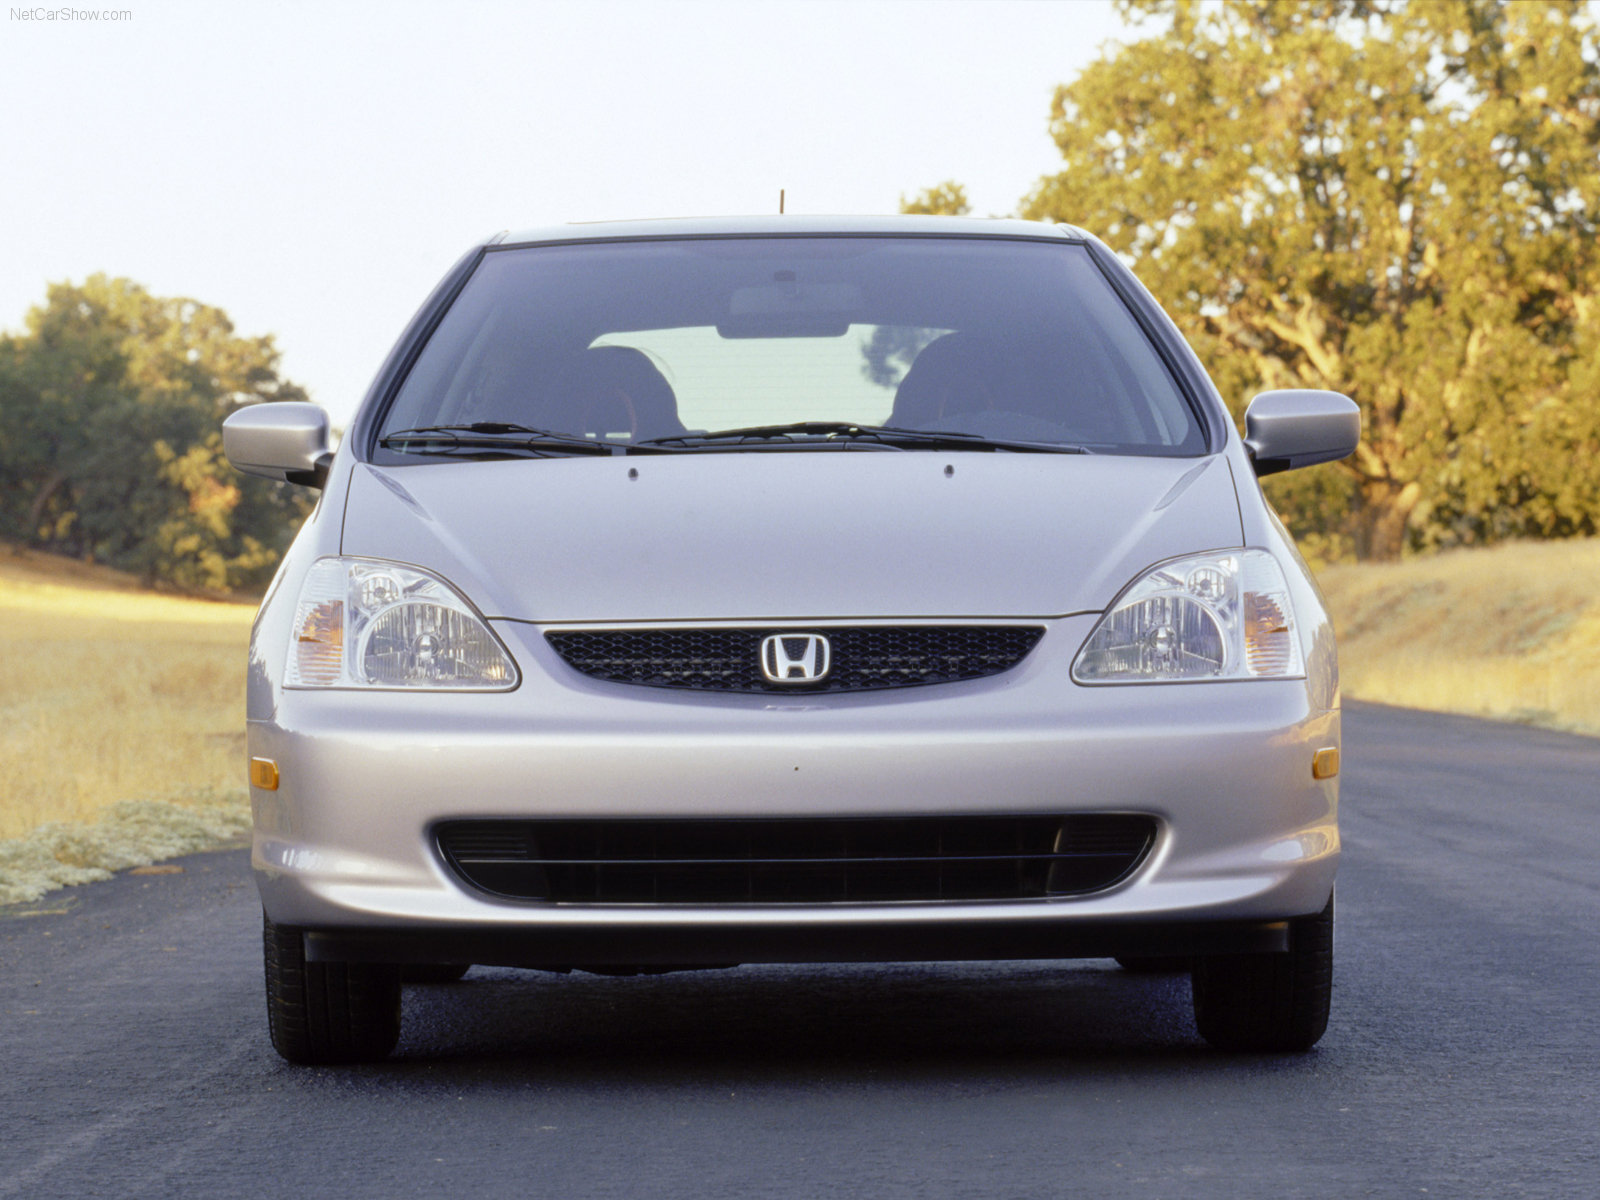 Honda Civic SI 2002 Honda-Civic_Si-2002-1600-16